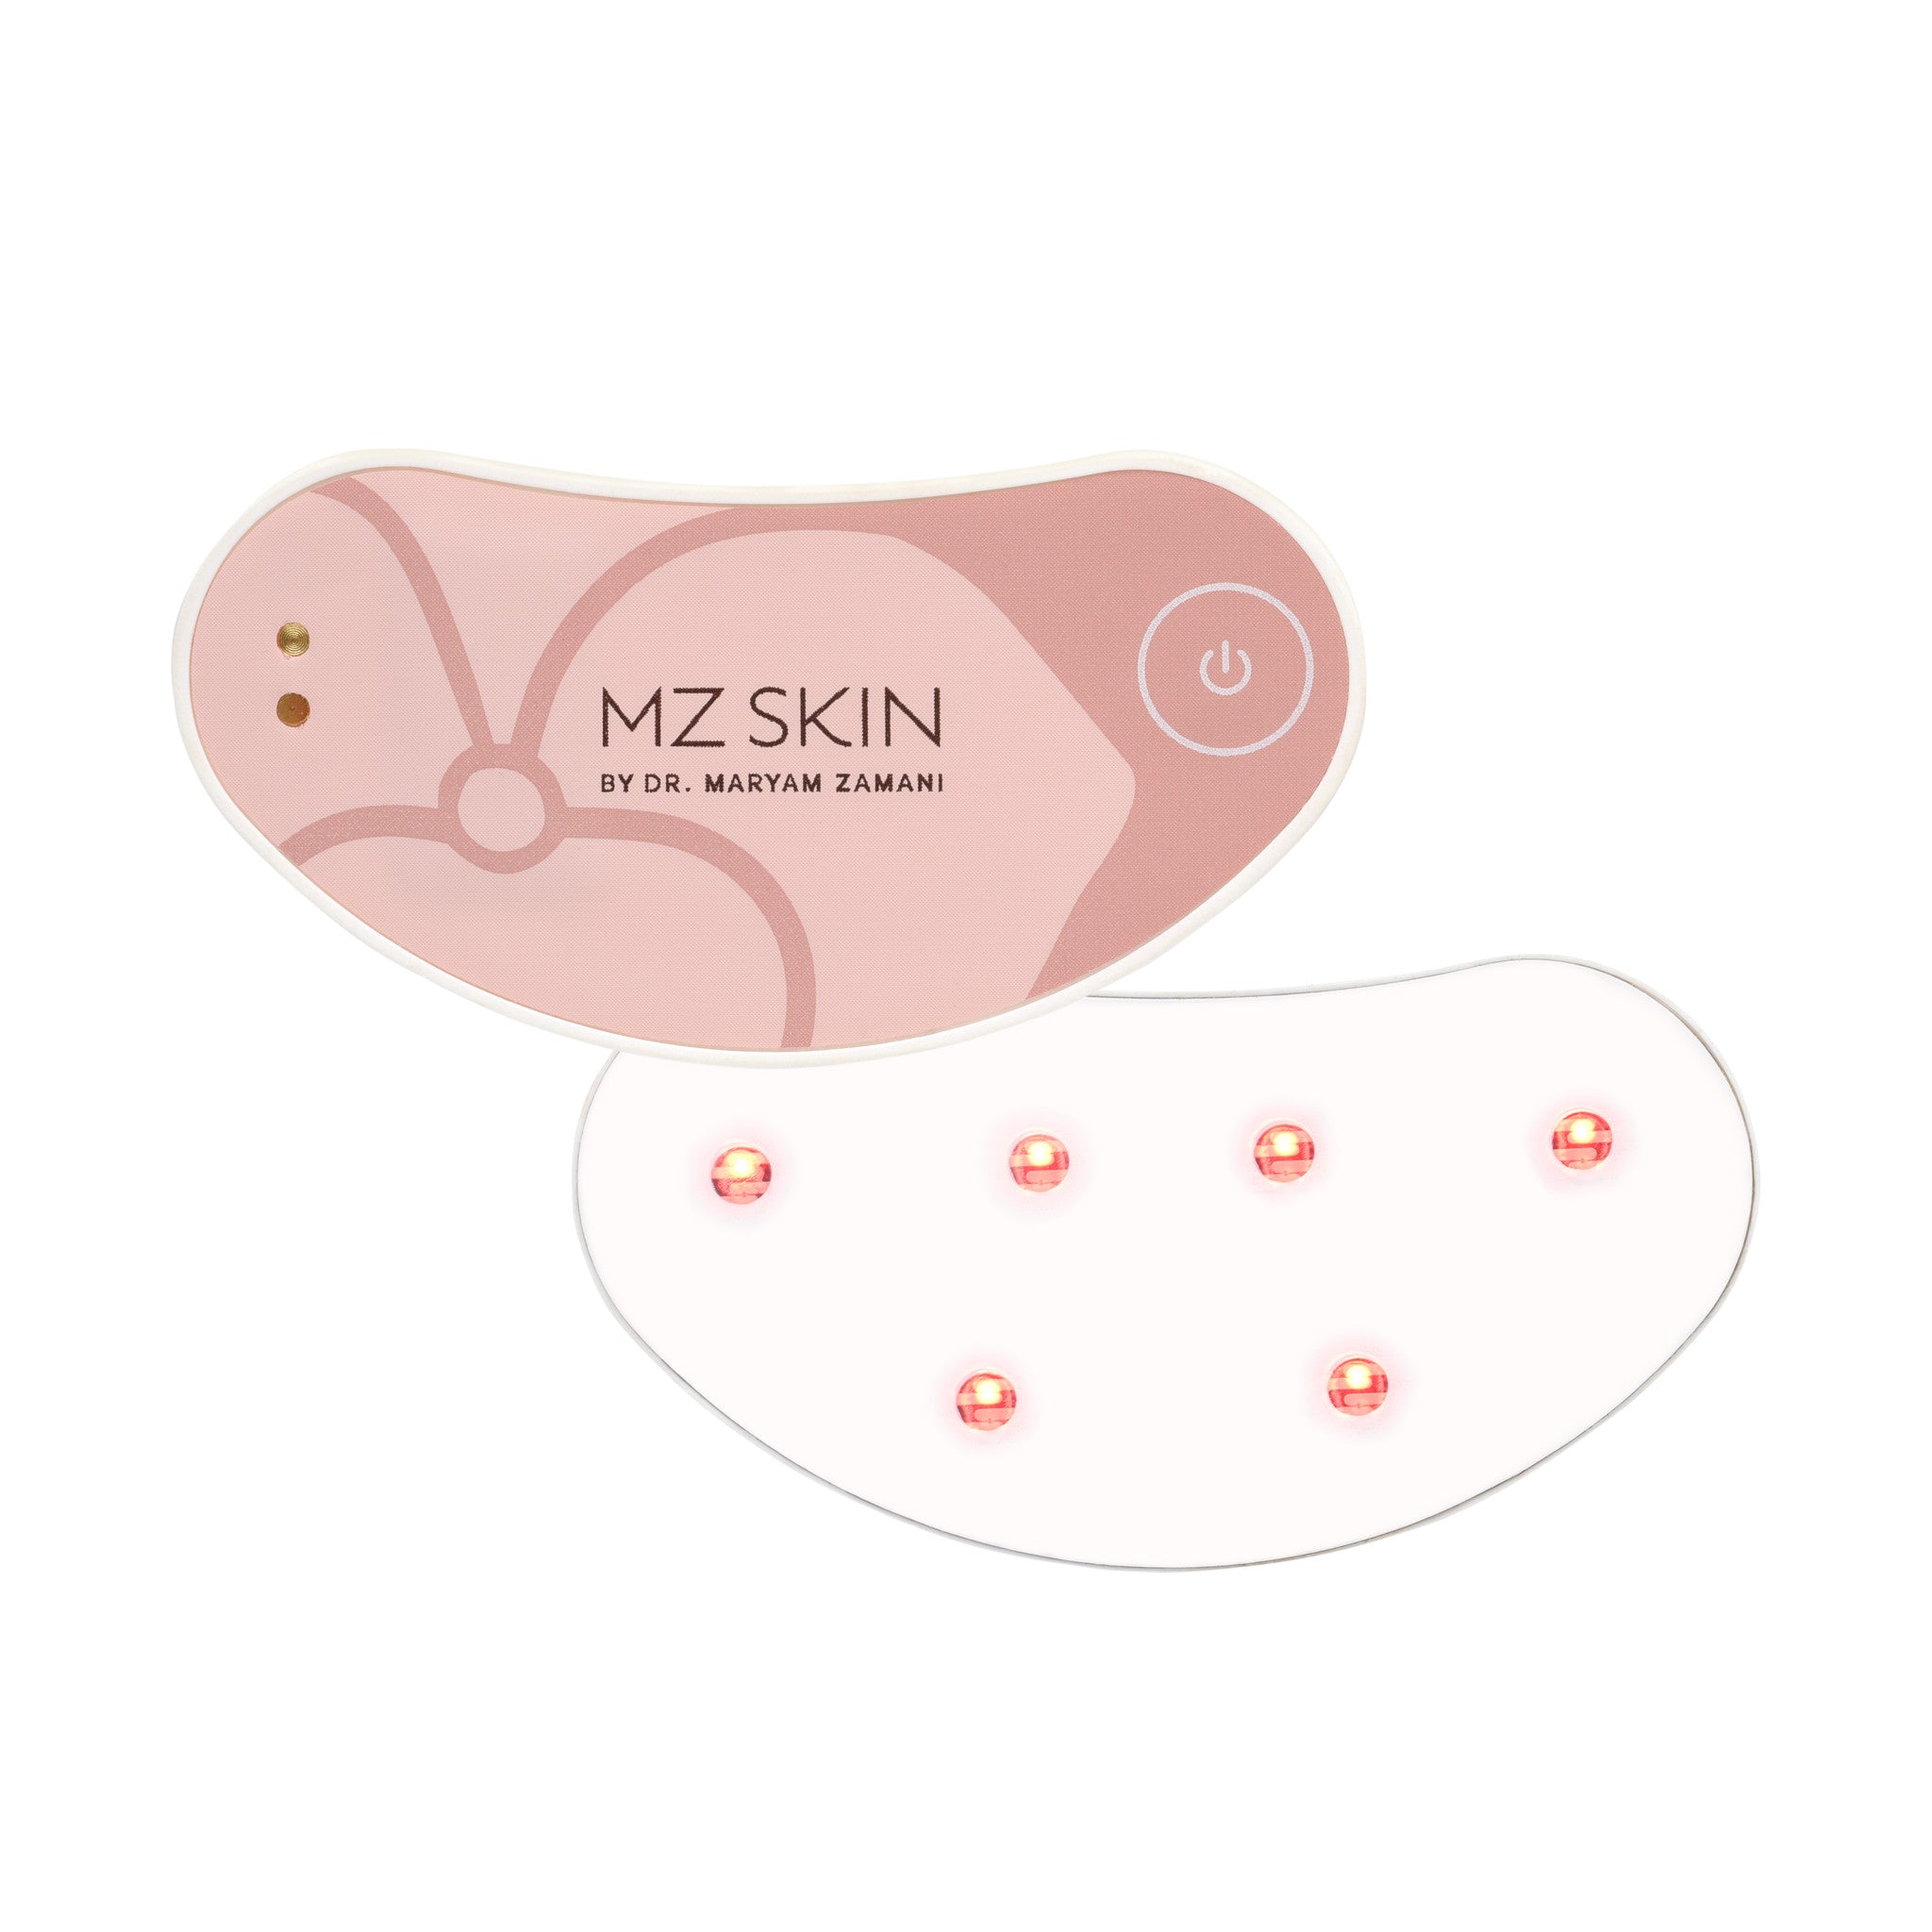 MZ Skin Lightmax Minipro Eyeconic LED main image.